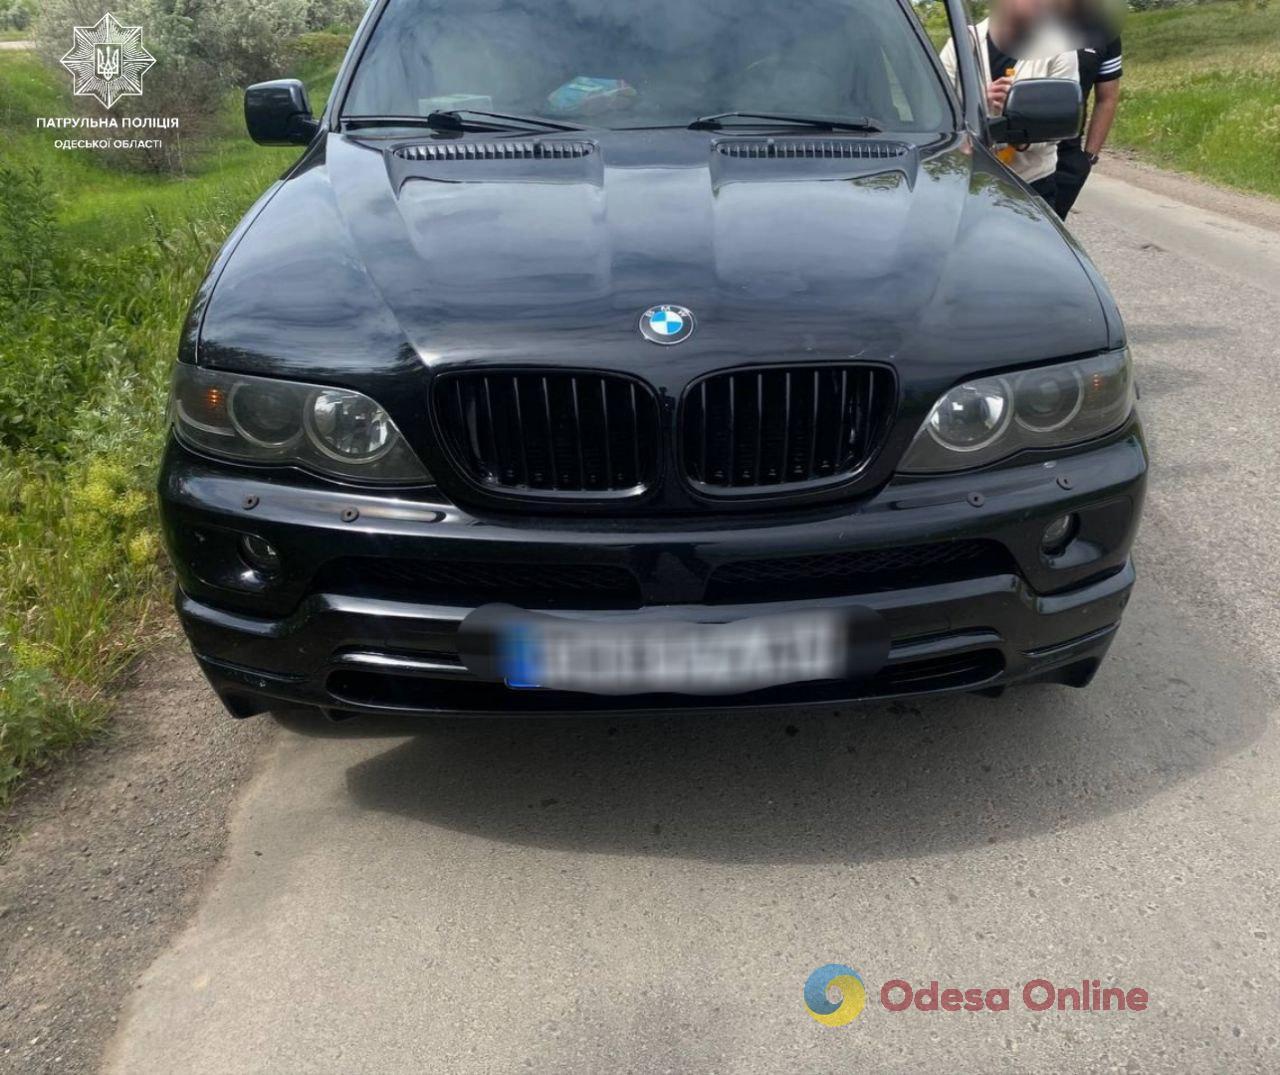 В Одеській області патрульні виявили автівку з підробленим VIN-кодом